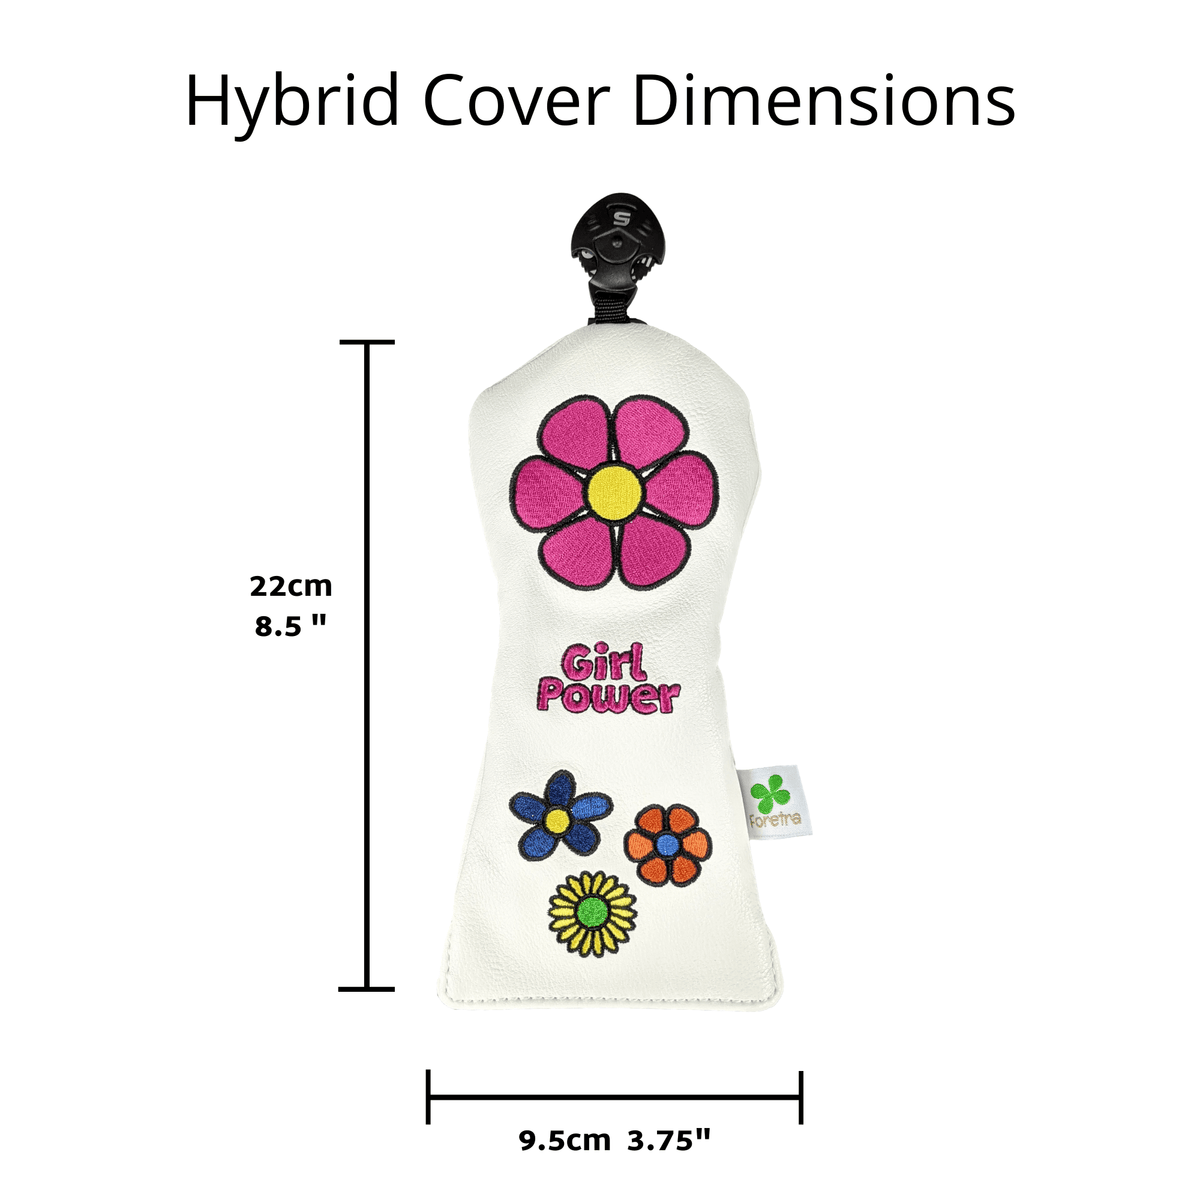 Girl Power - Utility / Hybrid Headcover